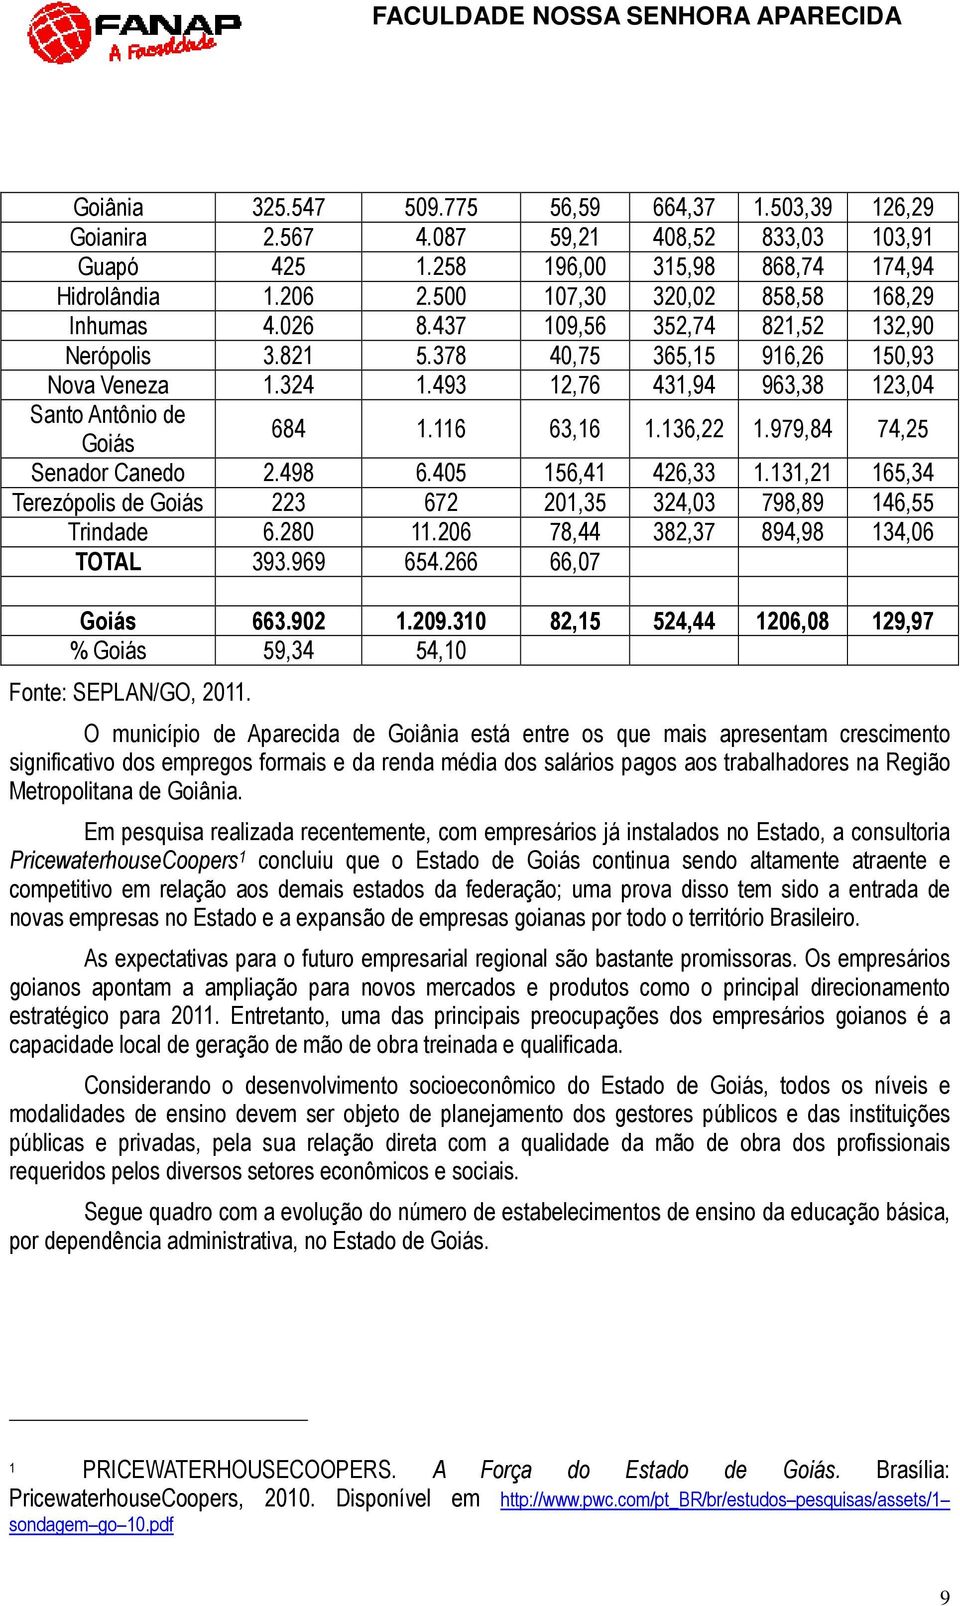 493 12,76 431,94 963,38 123,04 Santo Antônio de Goiás 684 1.116 63,16 1.136,22 1.979,84 74,25 Senador Canedo 2.498 6.405 156,41 426,33 1.